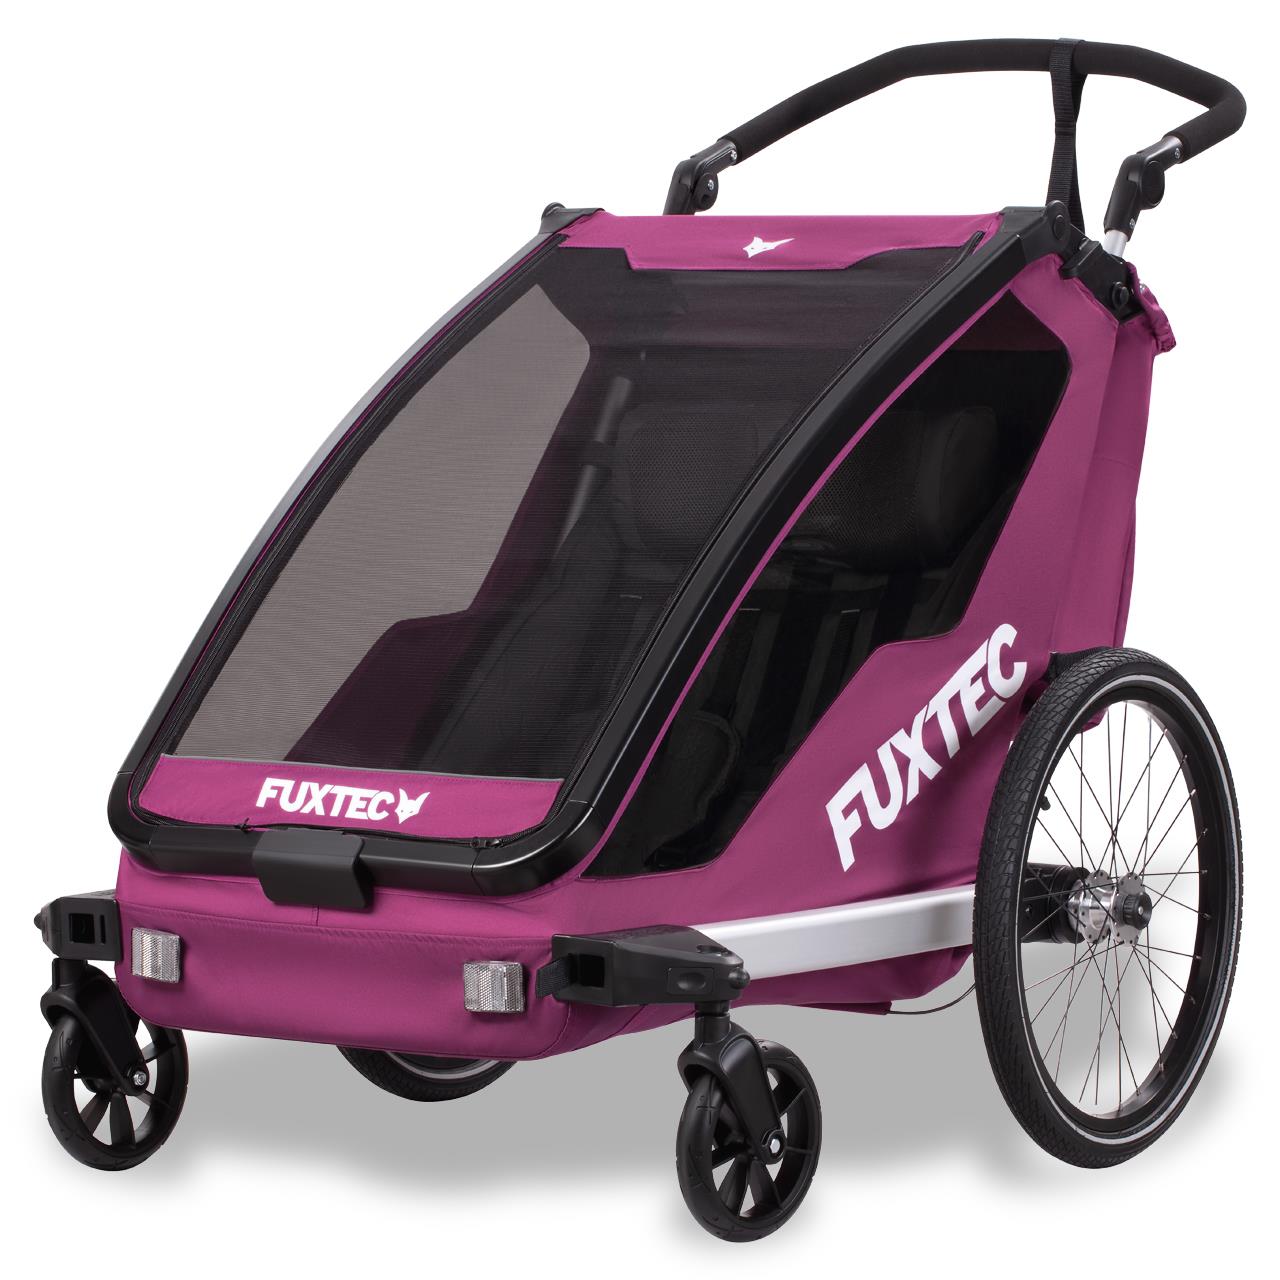 FUXTEC FX-FA1: Carrello Bici Sportivo Convertibile per Bambini - Multifunzione, Sicuro e Confortevole - VIOLA